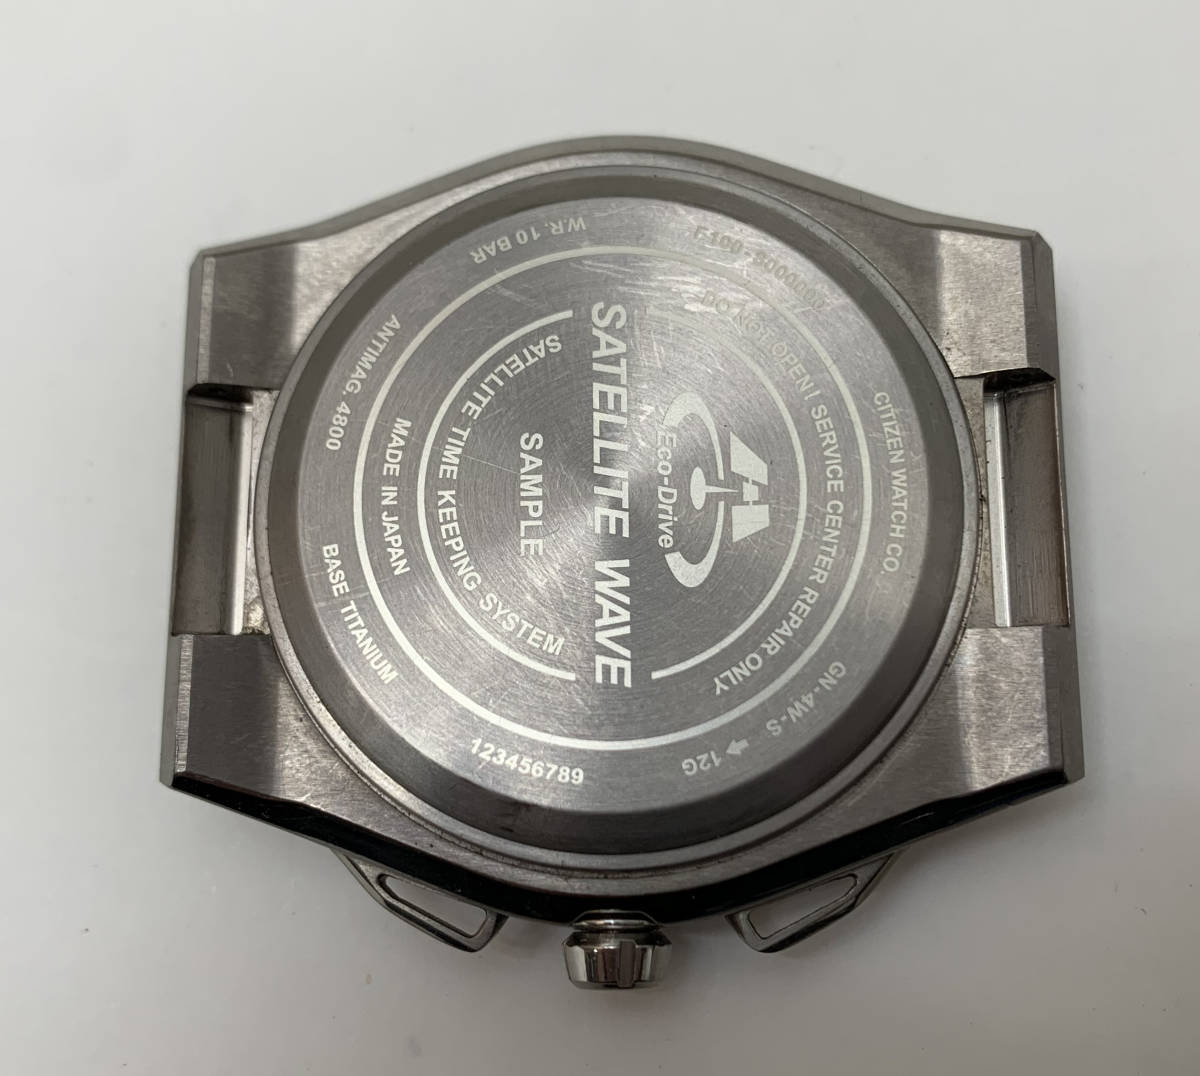 CITIZEN エコ・ドライブ サテライト ウエーブ F100 シチズン ソーラー メンズ 腕時計 SAMPLE サンプル品 希少_画像6